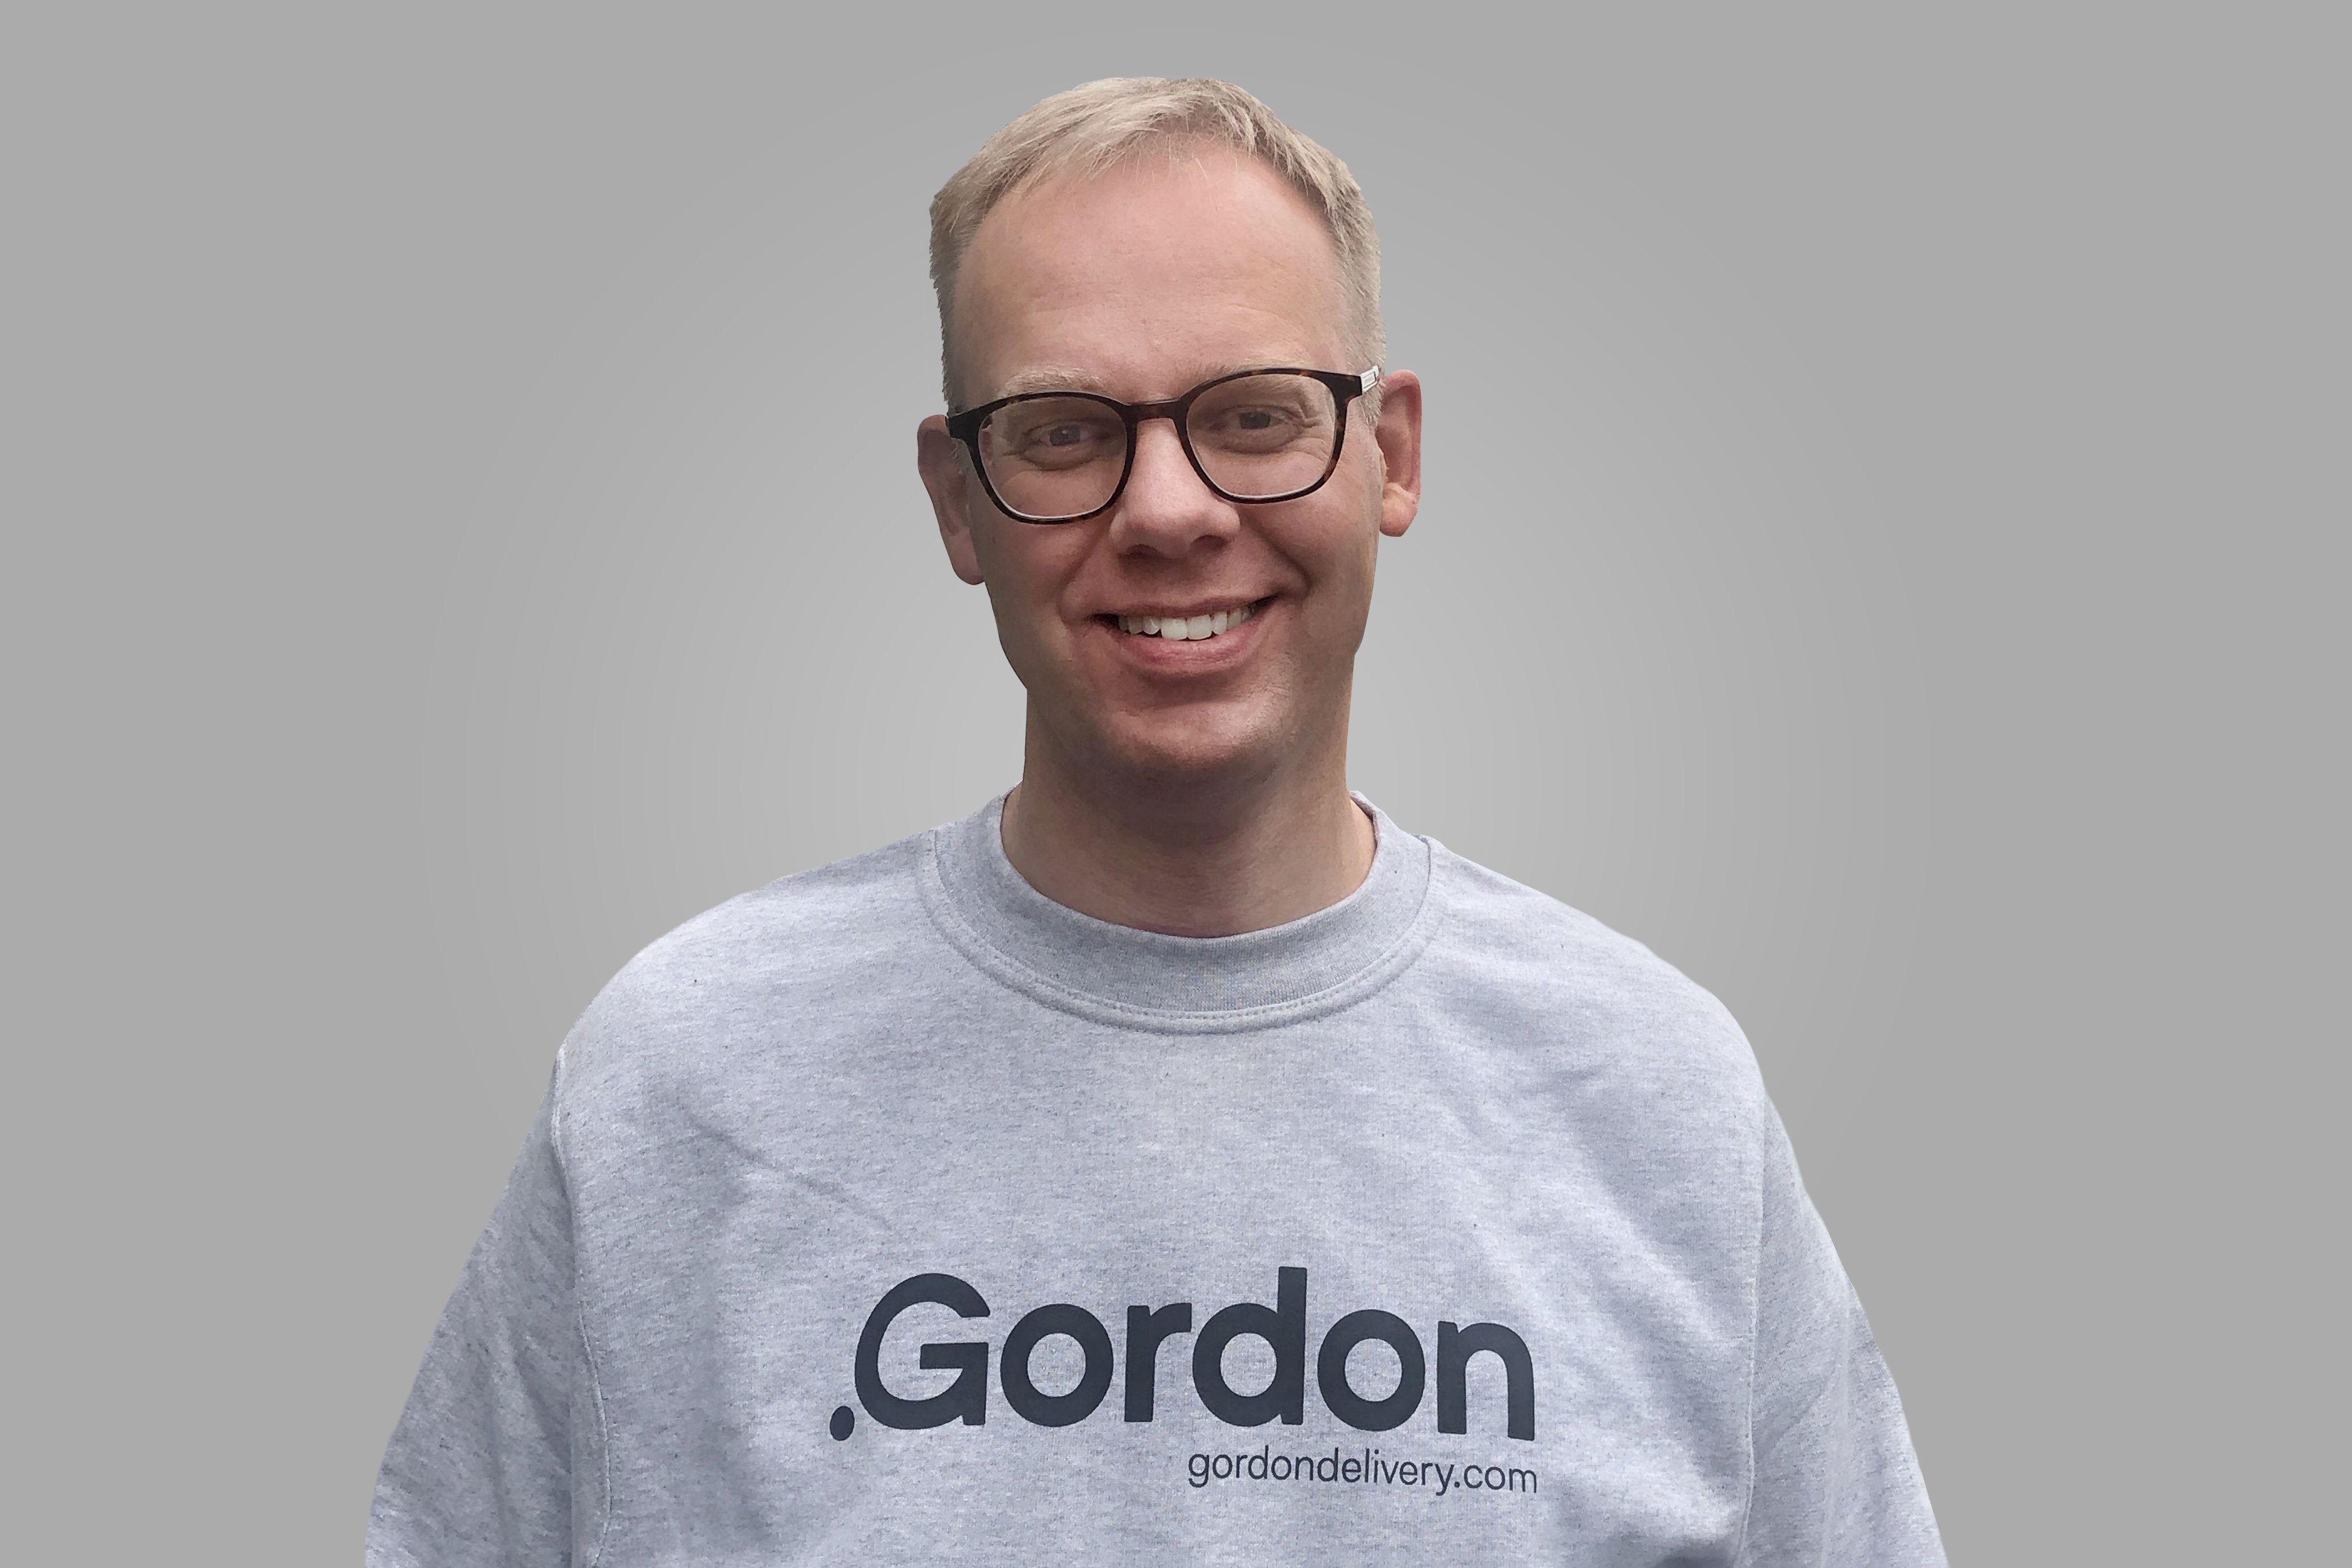 Gordon anställer för första gången en PR & Communication Manager